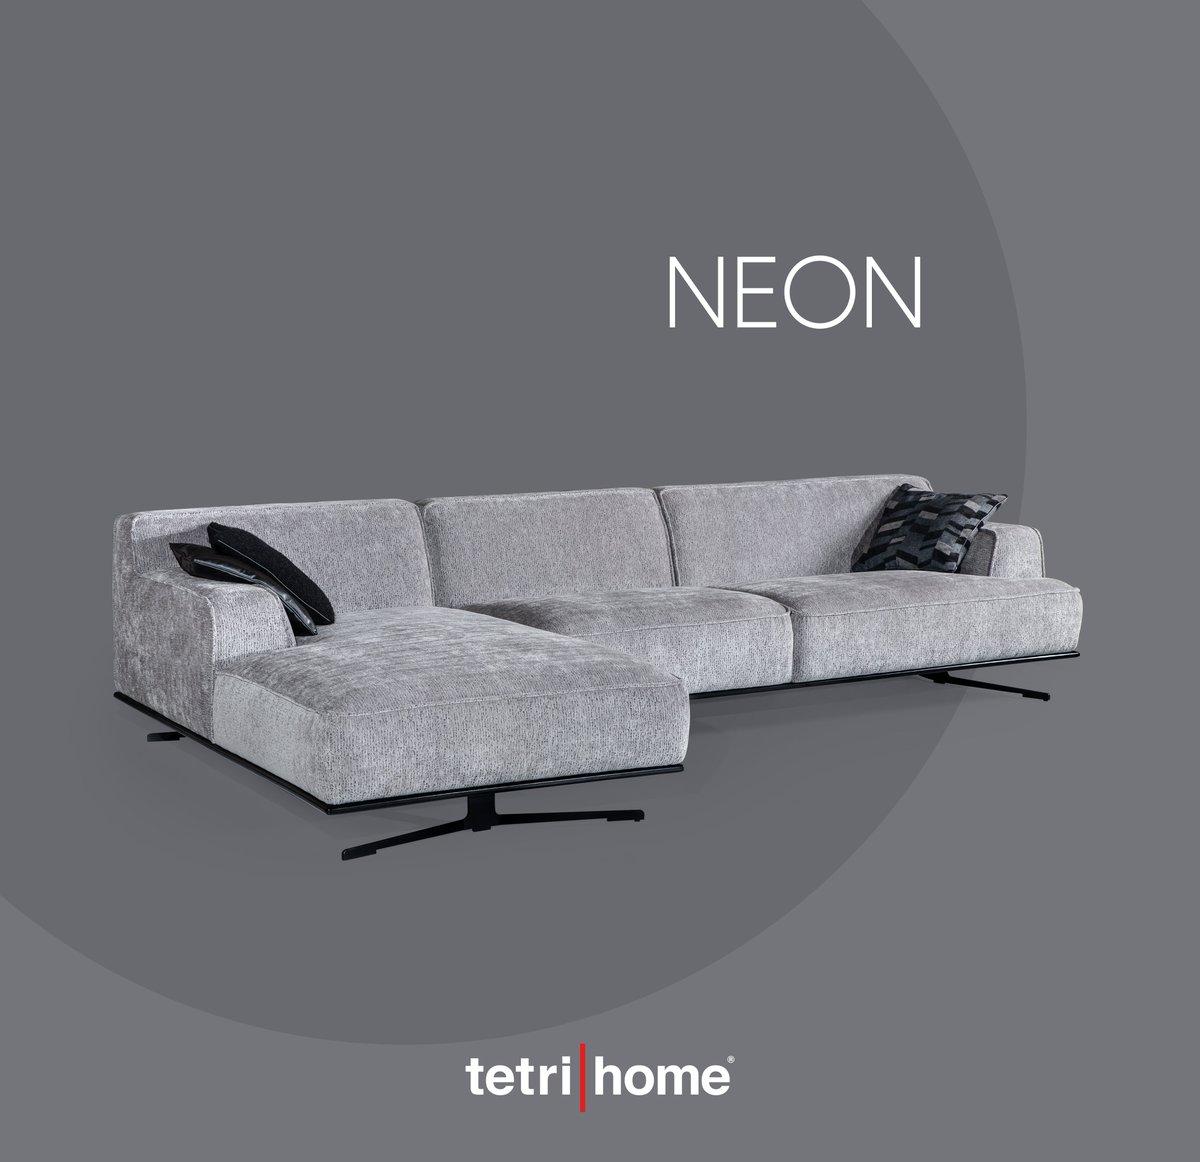 NEON KÖŞE

#tetrihome #neon #köşekoltuktakımı #köşetakımı #mobilya #sofa #furniture #homedecor #new #newsofa #yenikoleksiyon